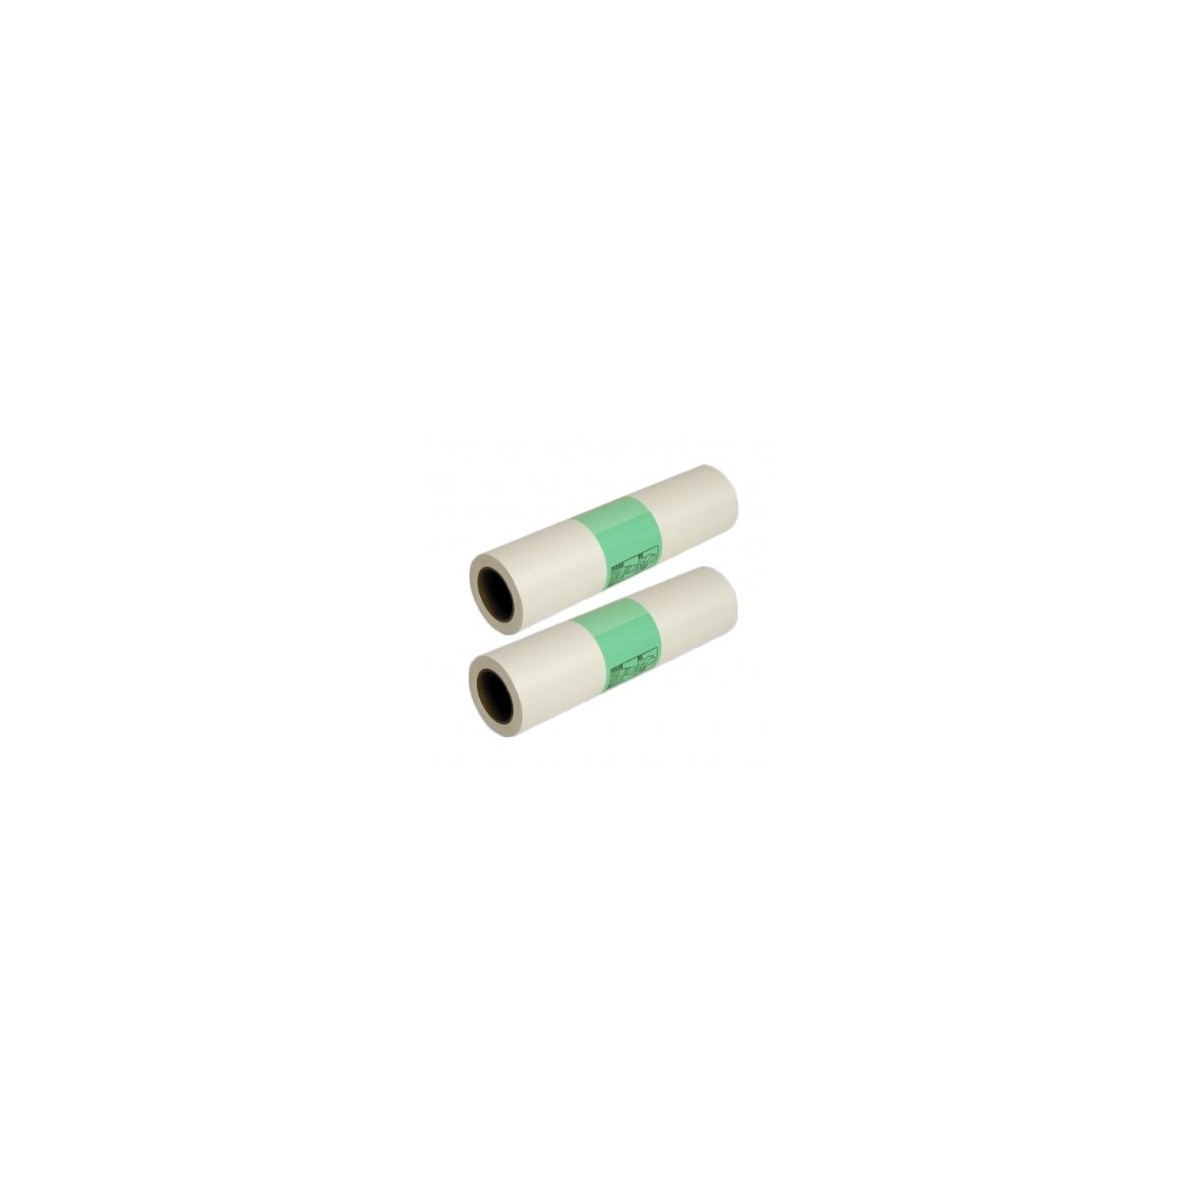 Ricoh 893196 - Roller - Green,White